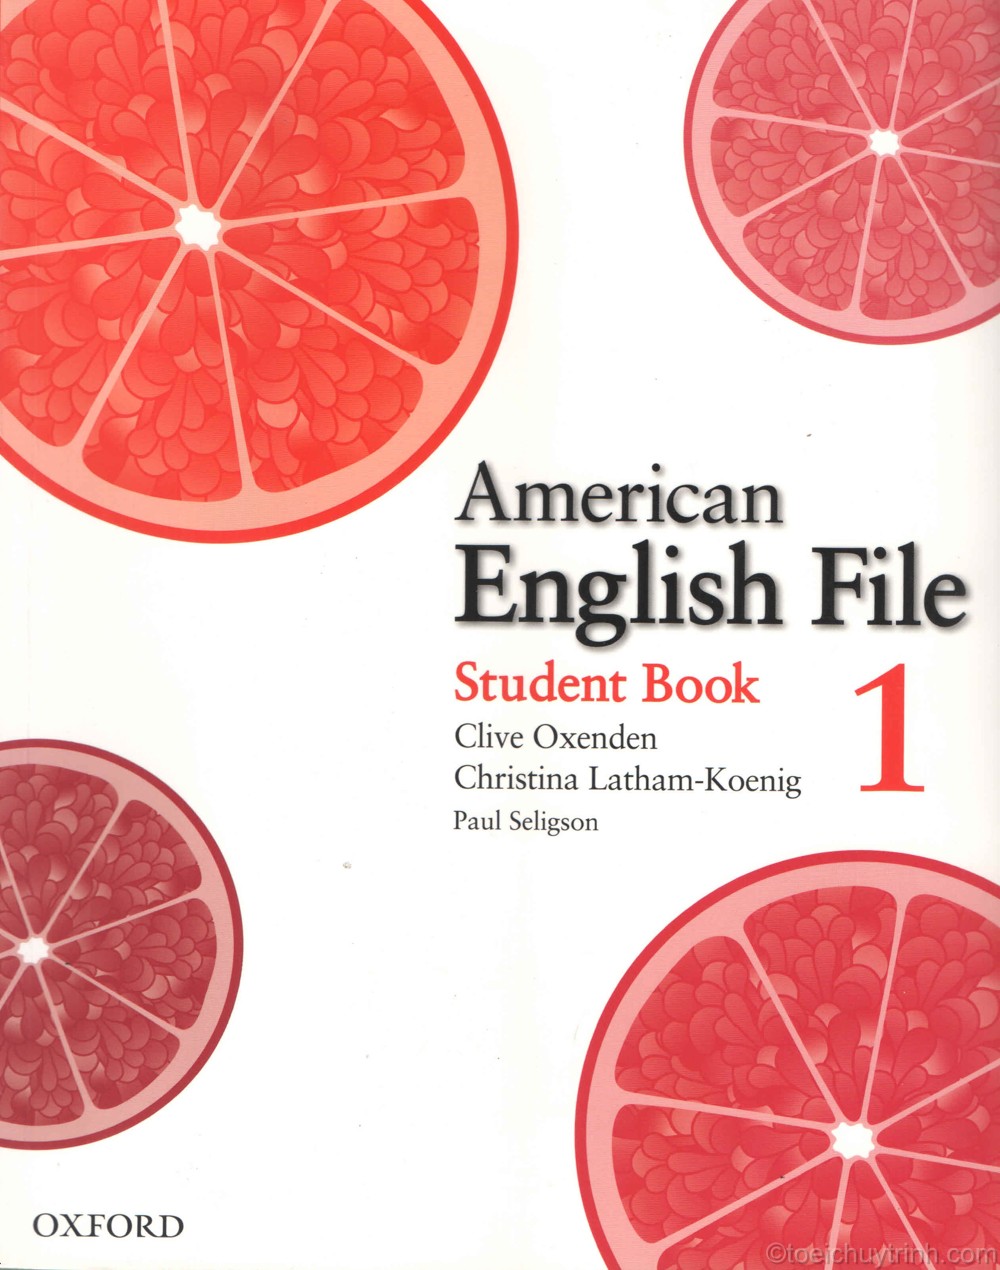 American English File 1 11 - Khóa học IELTS cho người mới bắt đầu